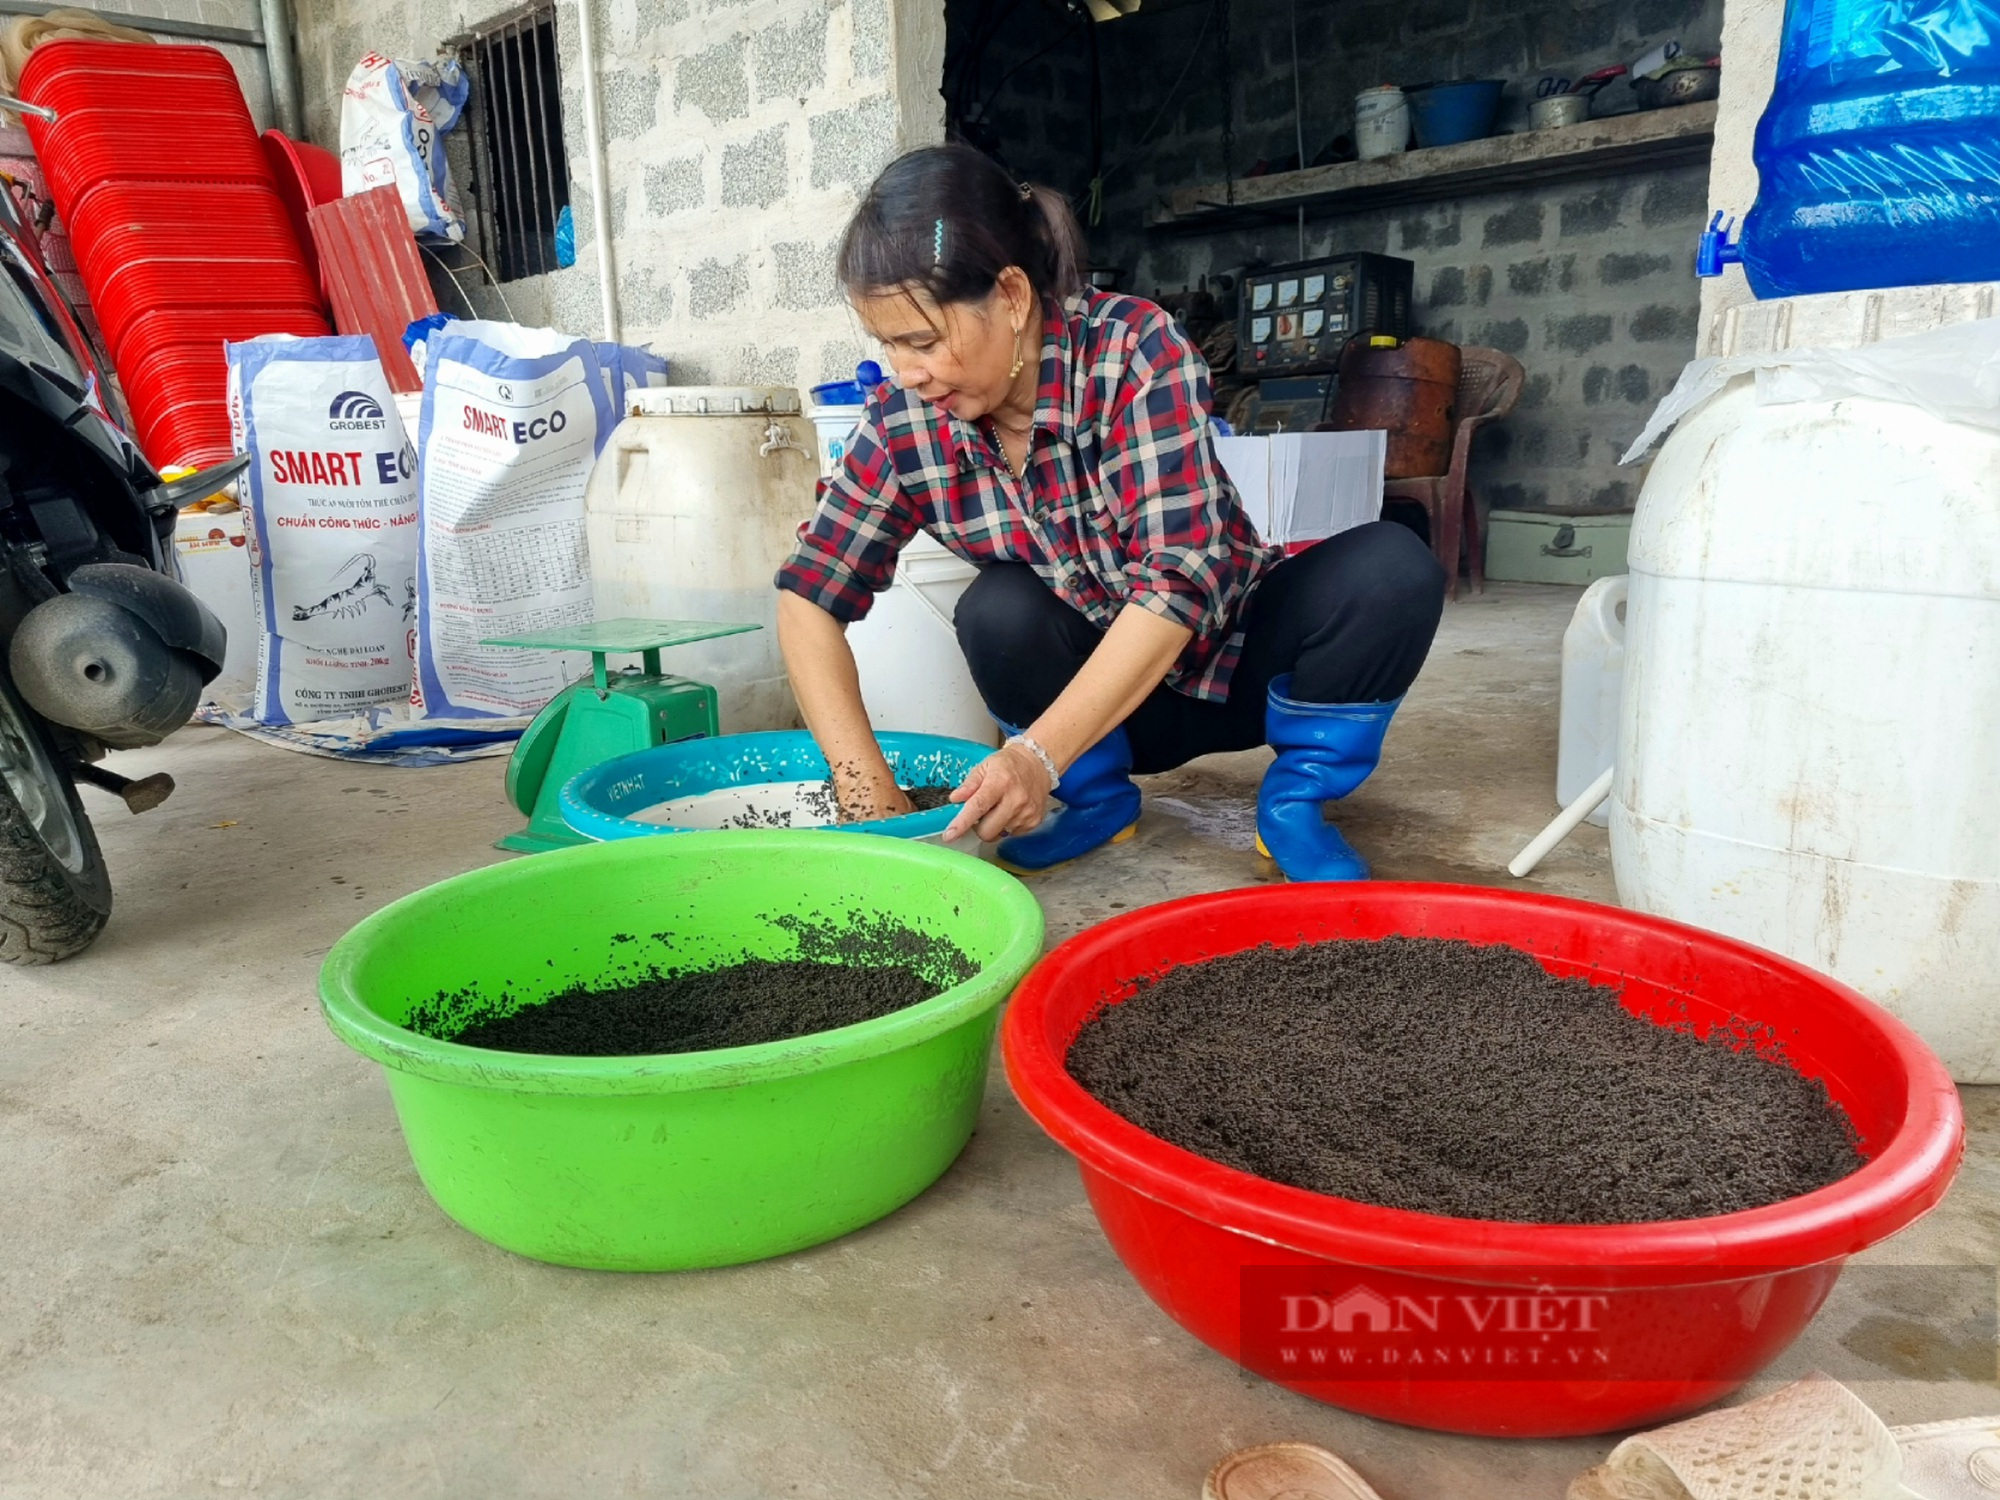 Ninh Bình: Một hộ nông dân nuôi tôm thẻ chân trắng lời gần 400 triệu đồng/năm - Ảnh 7.